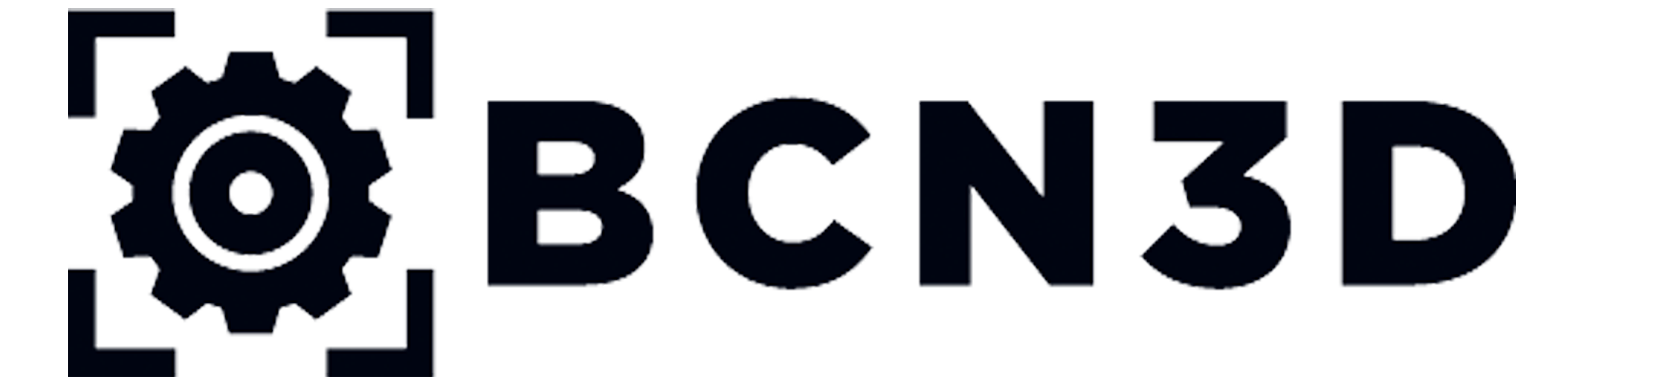 BCN3D Logo